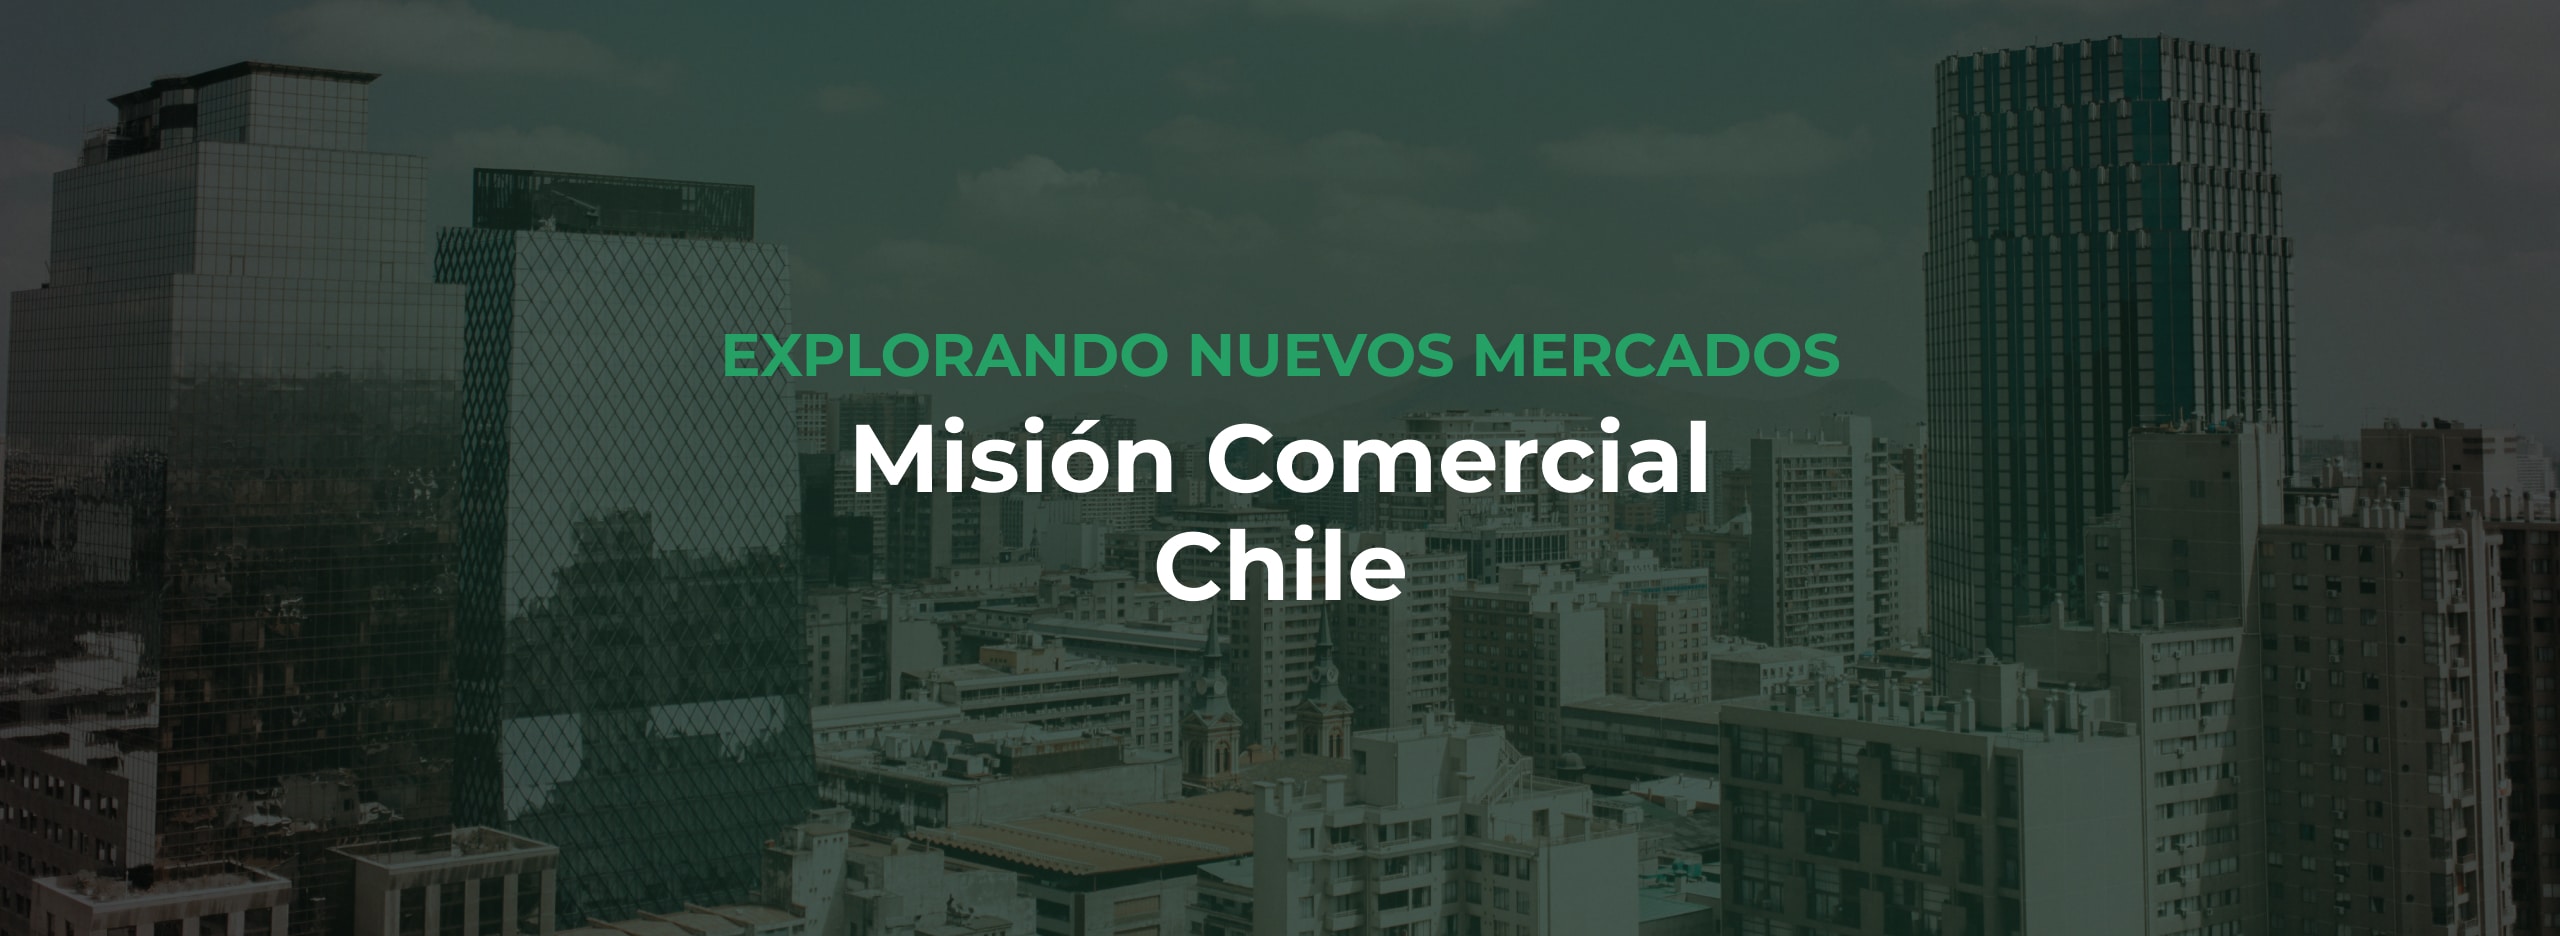 Explorando nuevos horizontes: Nuestra misión comercial a Chile